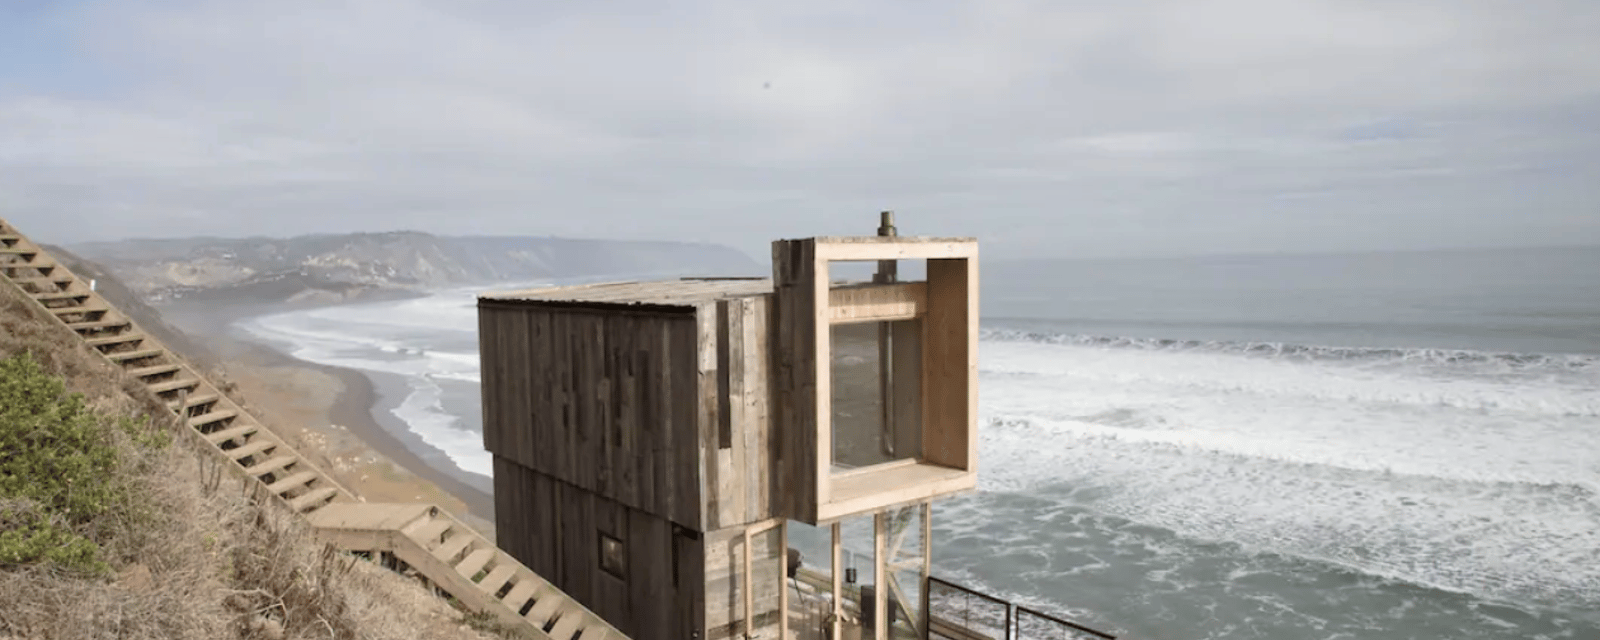 Vous pouvez maintenant louer cette cabane architecturale avec vue sur l'océan